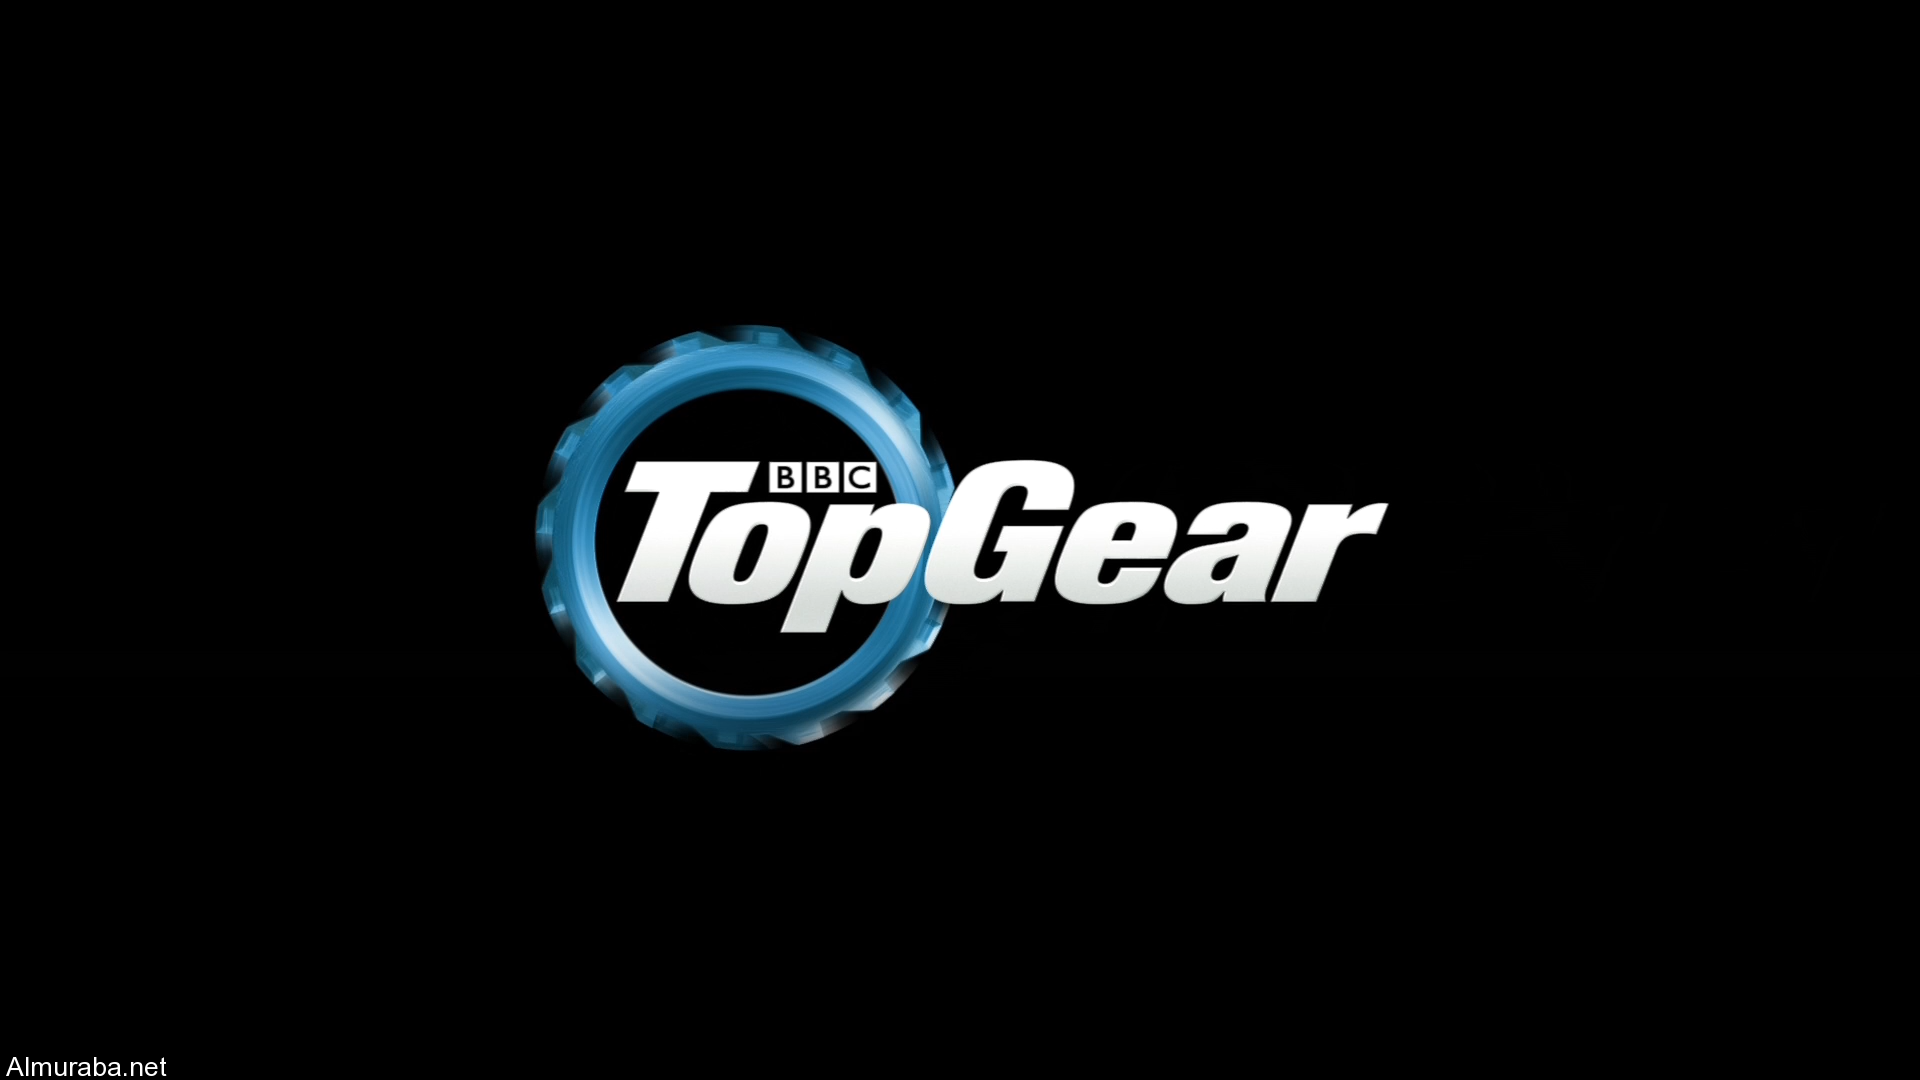 “توب جير” يعود إلى الشاشة البريطانية بتاريخ 29 مايو المقبل Top Gear